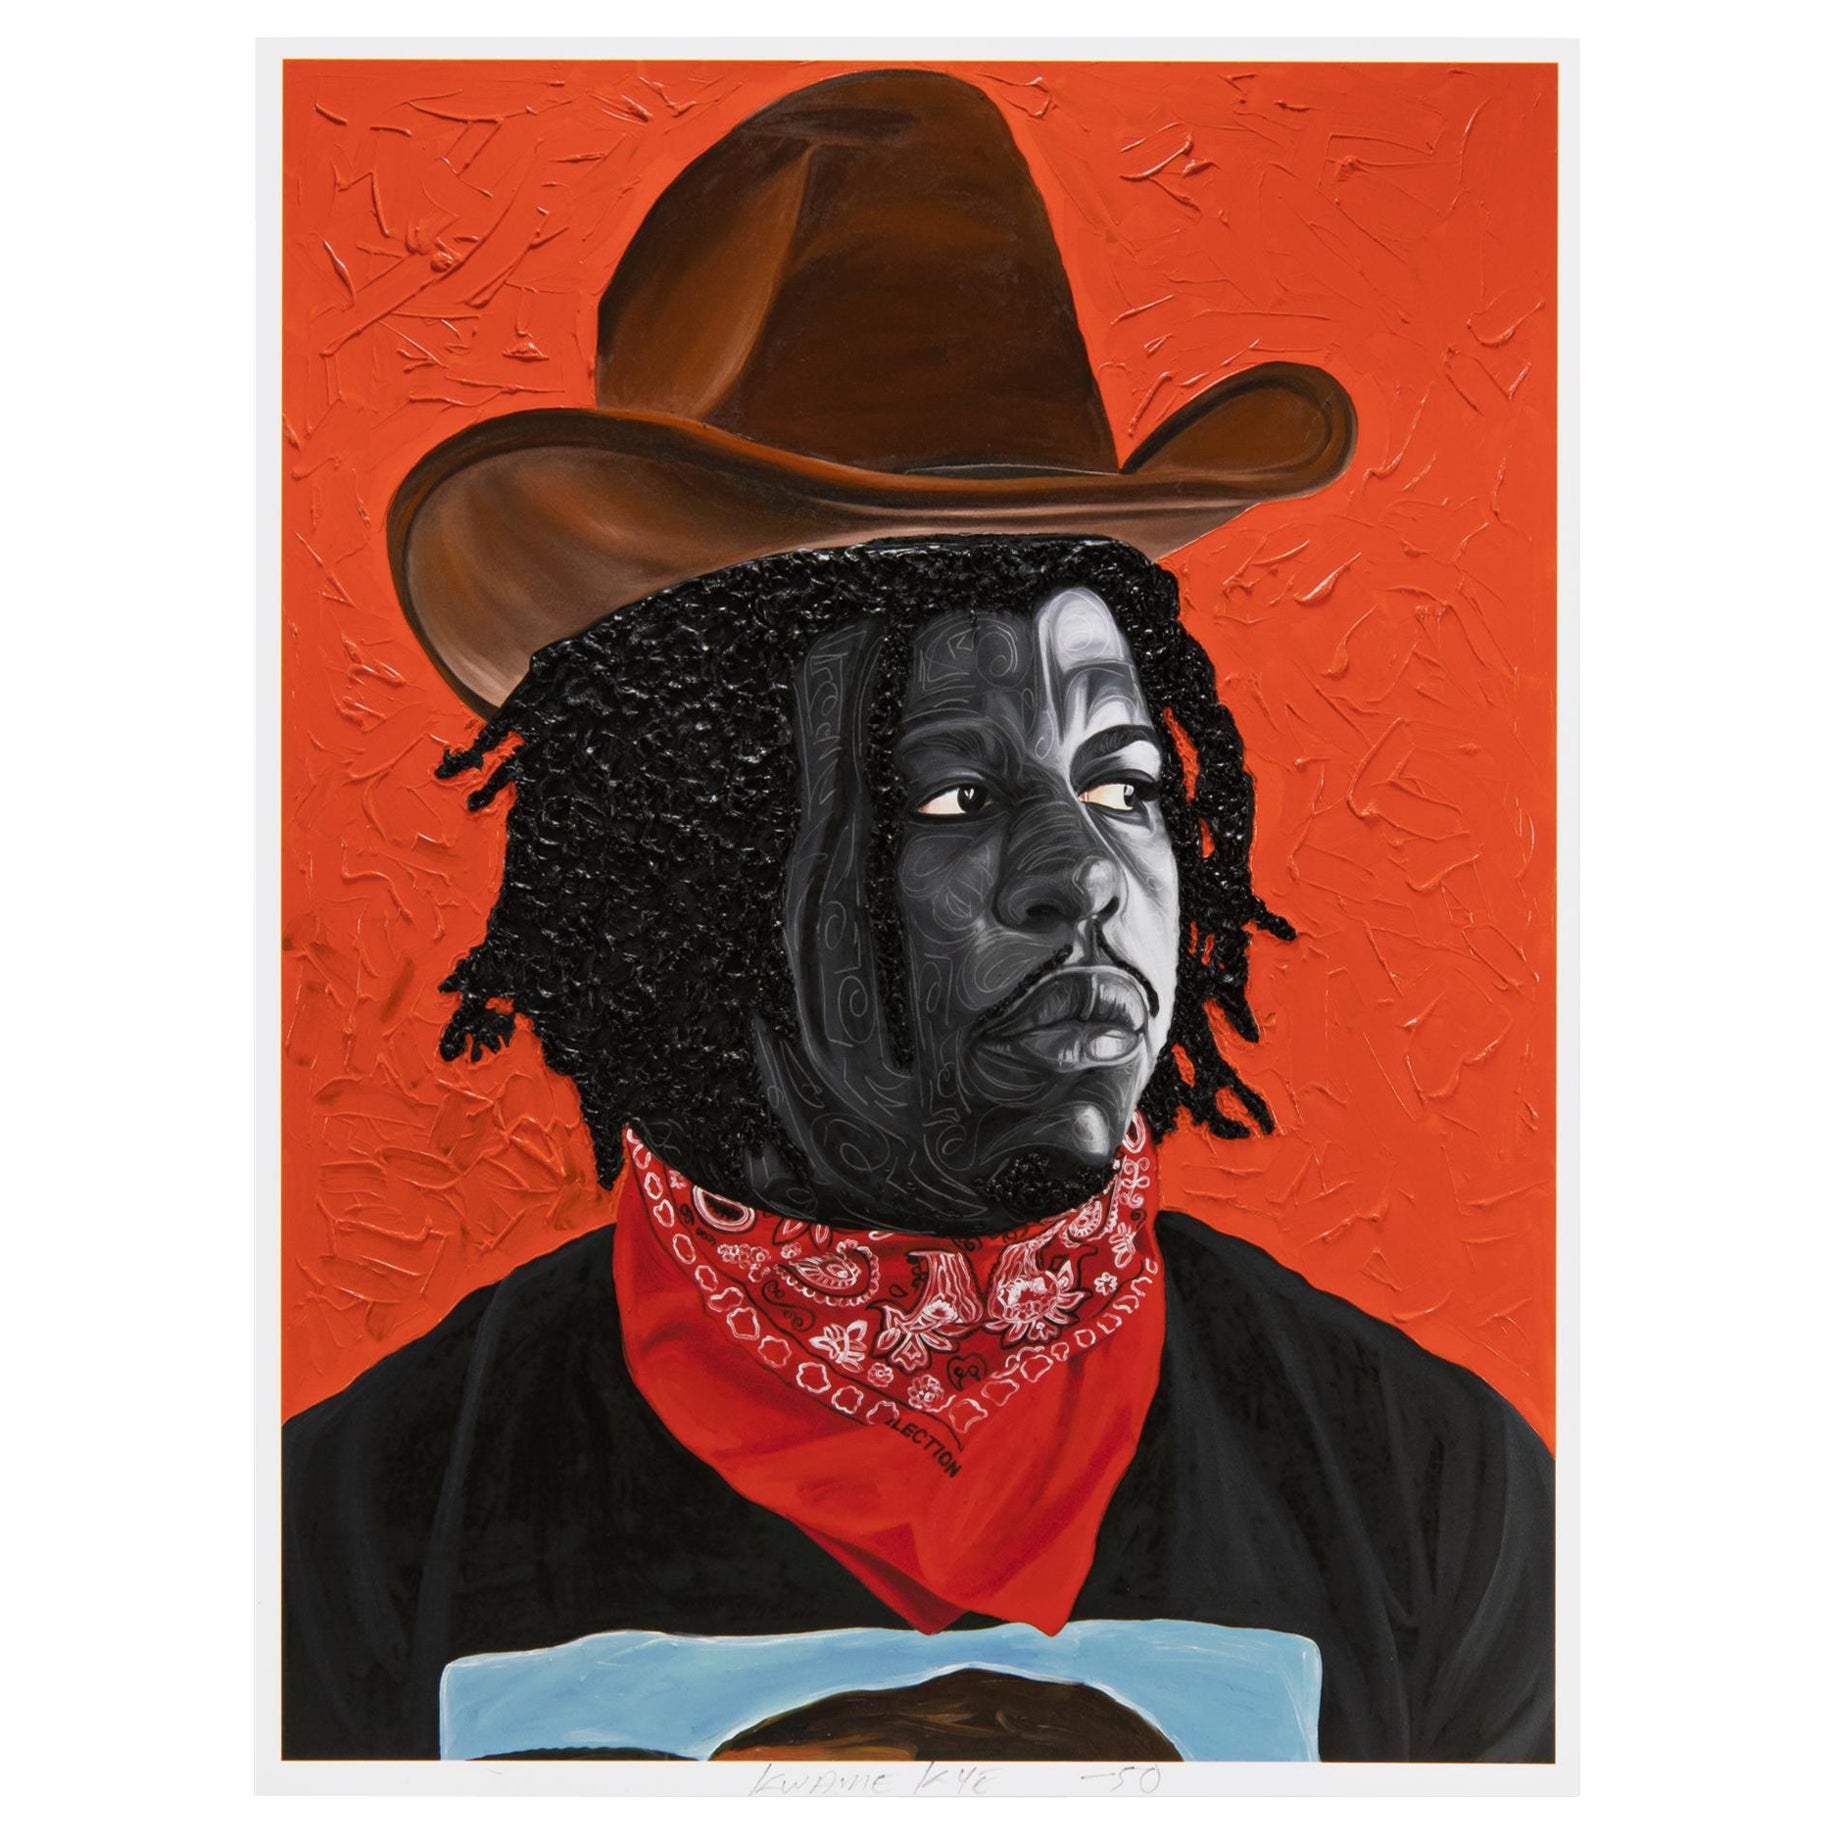 Otis Kwame Kye Quaicoe
Jon Gray (Black Rodeo), 2022
Support : Impression pigmentaire d'archives et livre
Dimensions de l'impression : 25 x 20 cm (10 x 8 in)
Dimensions du livre : 27,5 x 21,5 cm (11 x 8 1/2 in)
Edition de 50 exemplaires : signés et